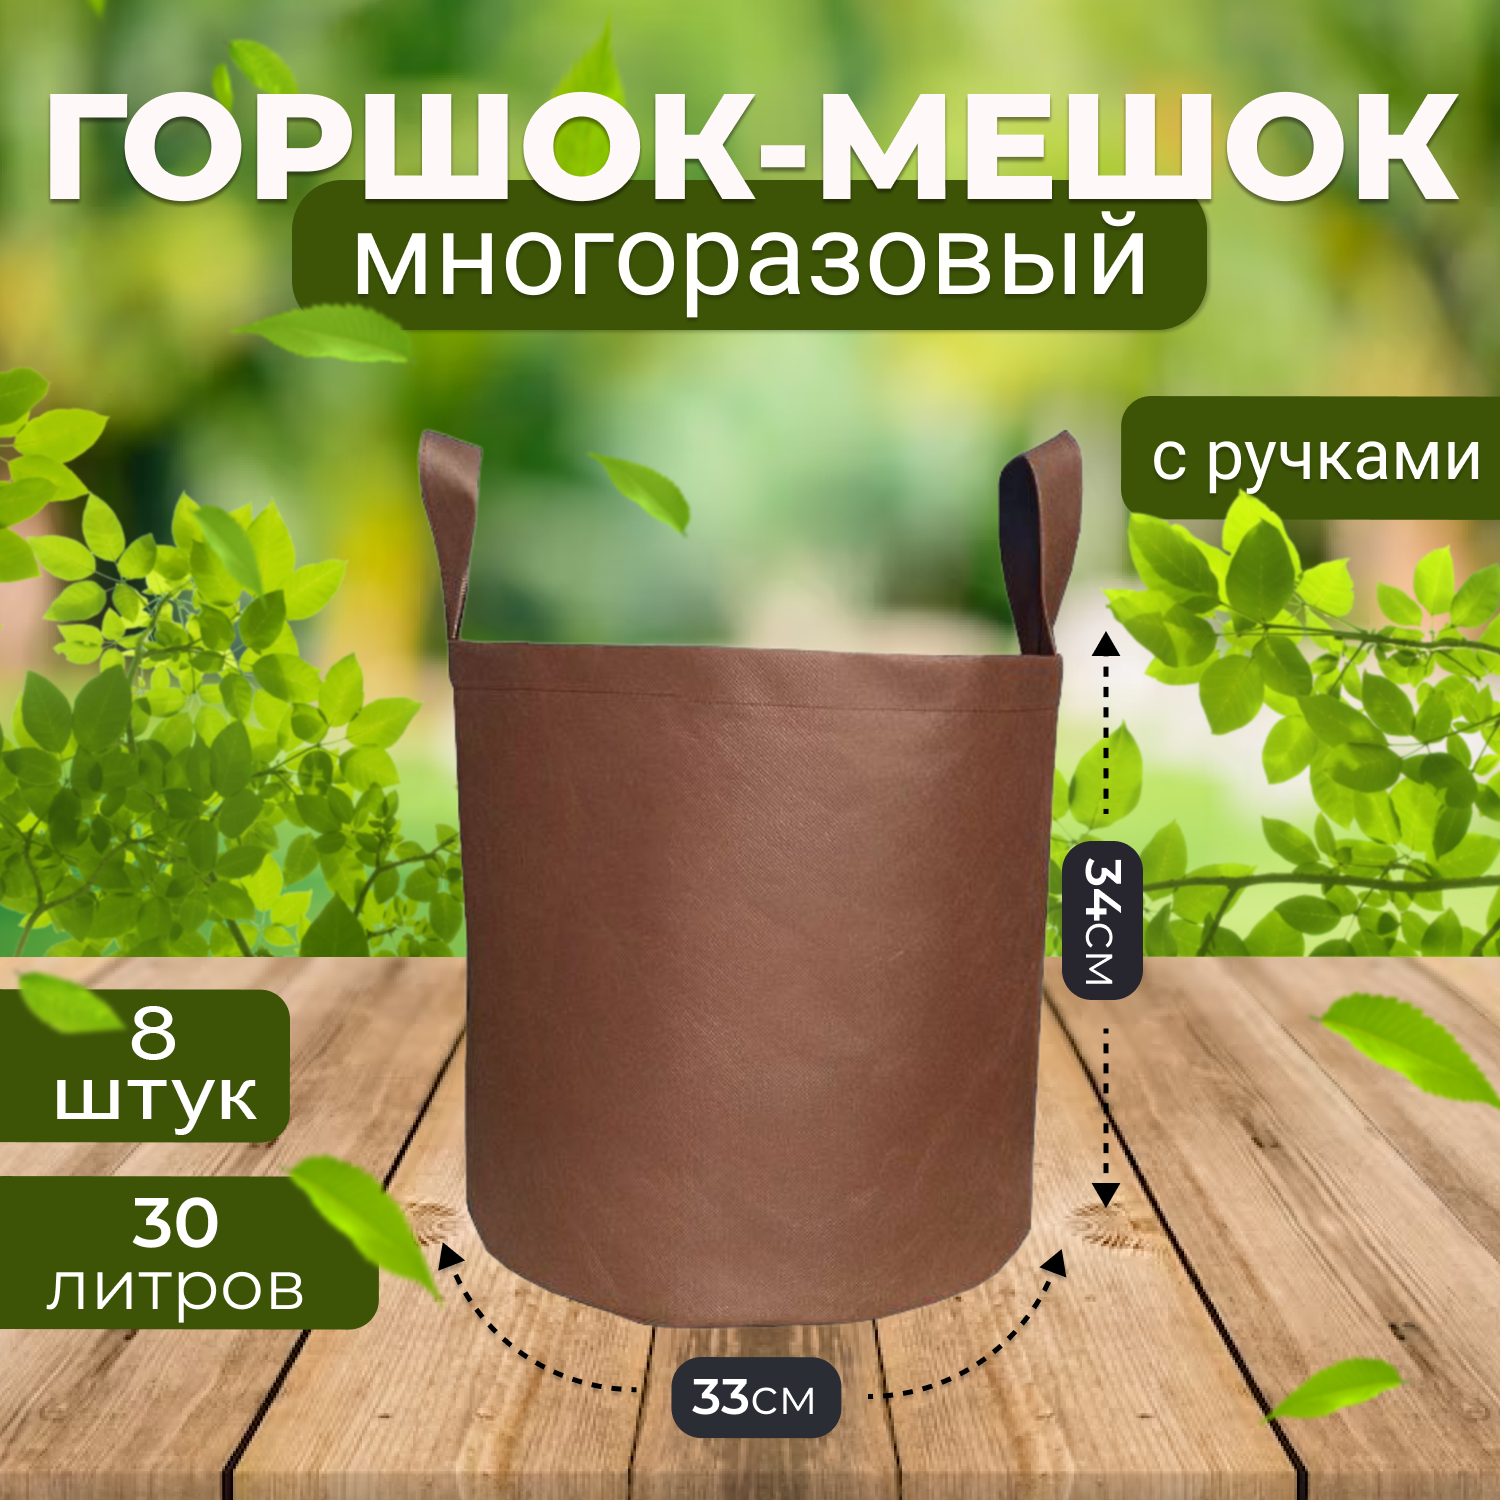 Мешок горшок текстильный из спанбонда Grower Green 30_litrov-Brown_8 30л., 8шт.